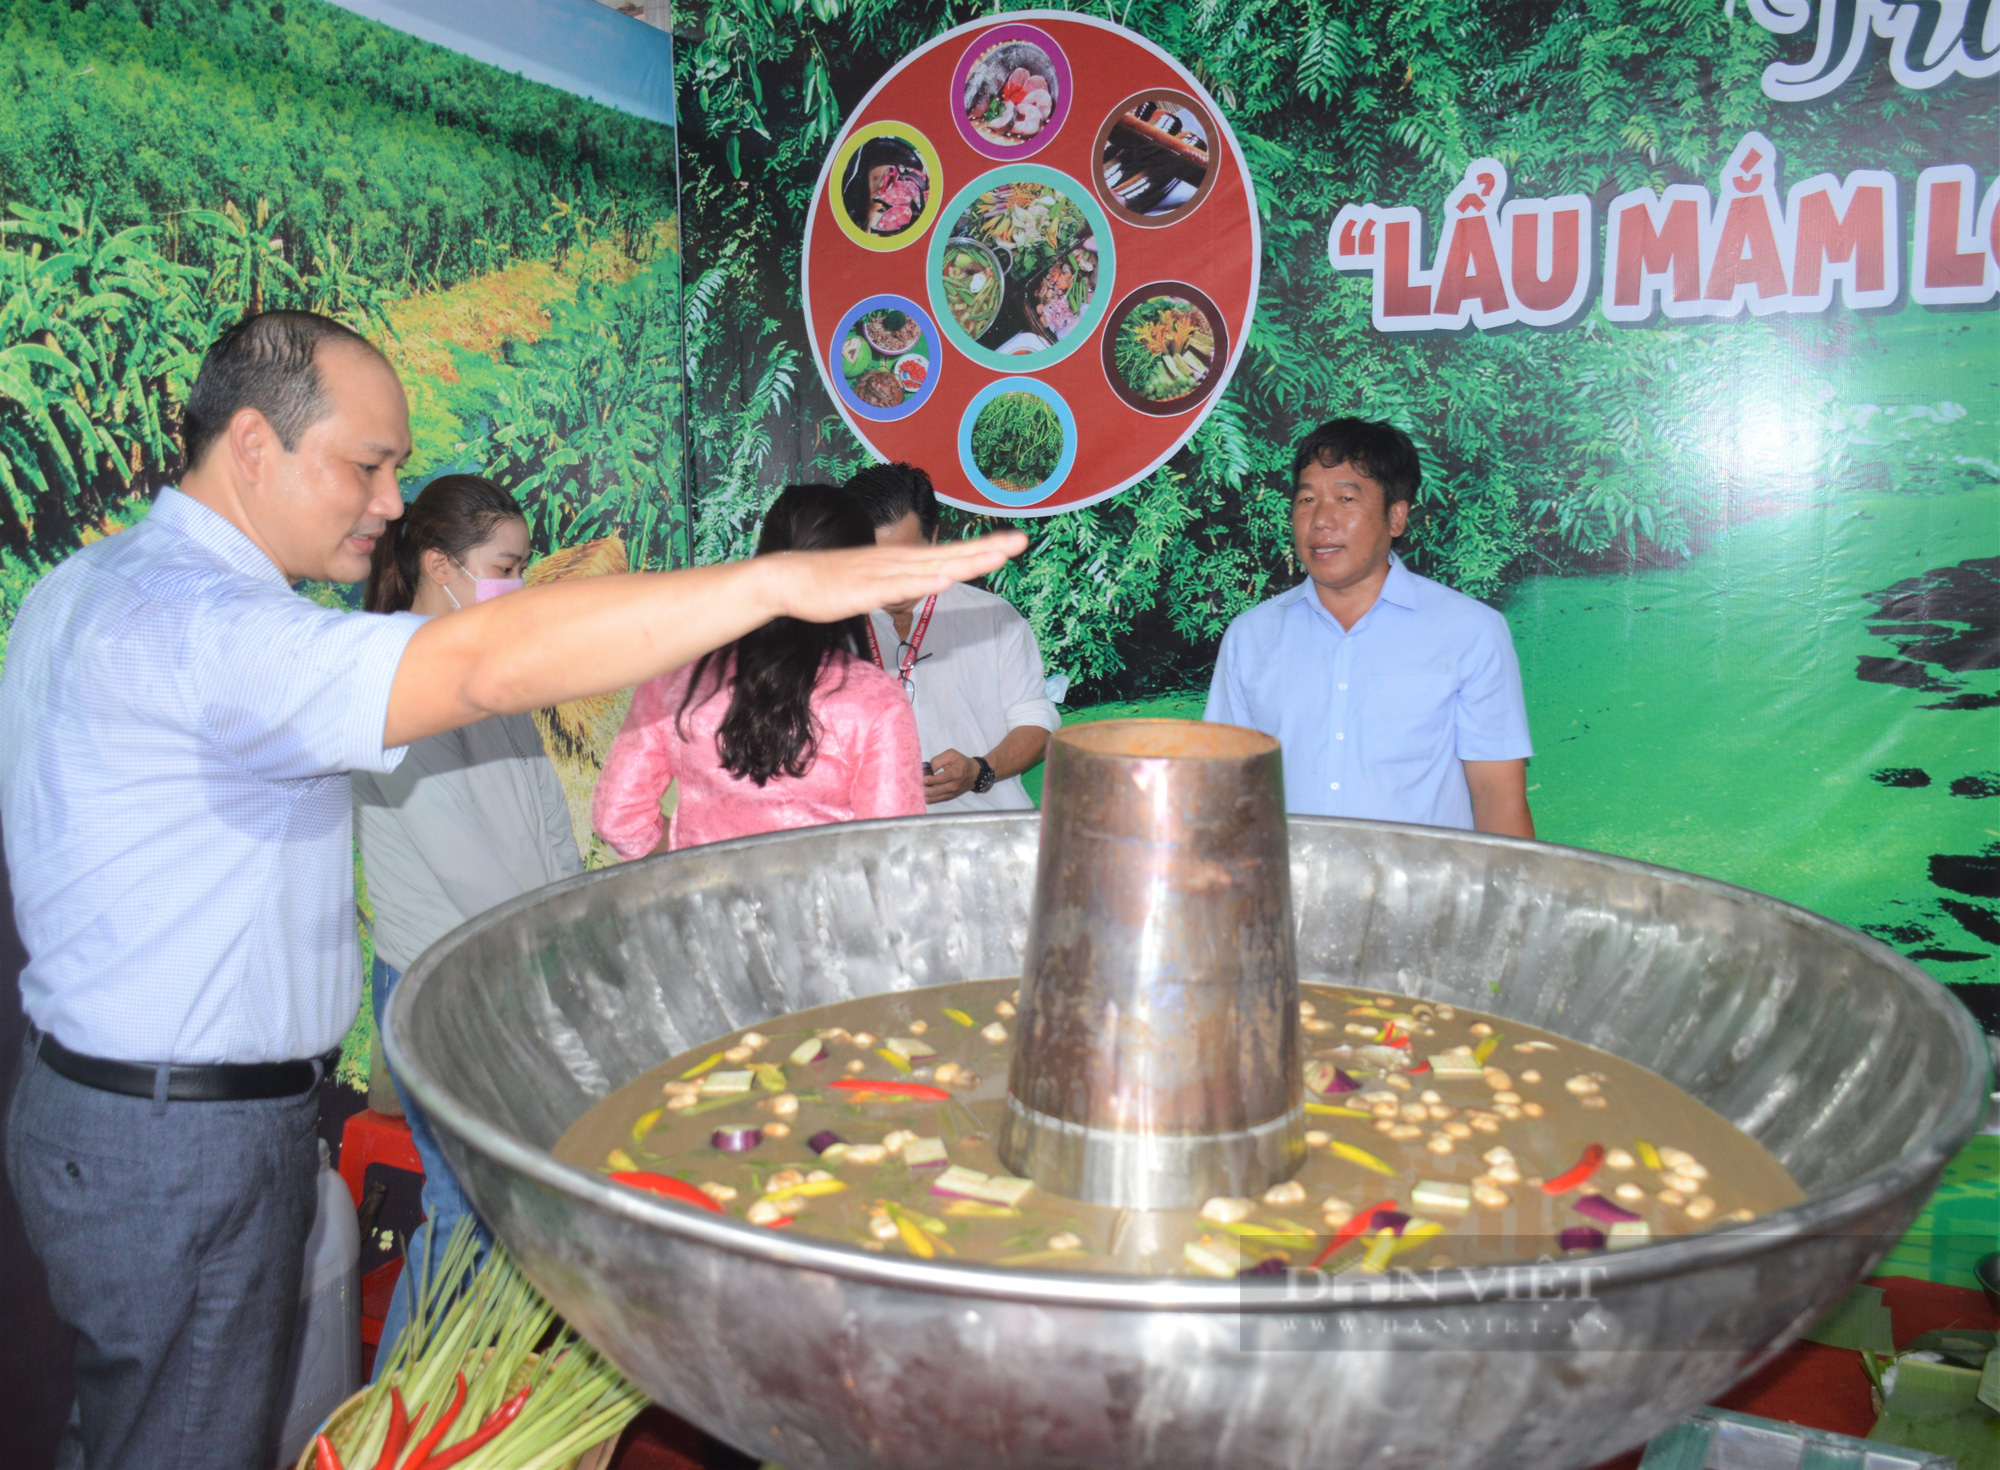 Hơn 30 loại rau tươi ngon dùng kèm nồi lẩu mắm đăng ký kỷ lục lớn nhất Việt Nam  - Ảnh 1.